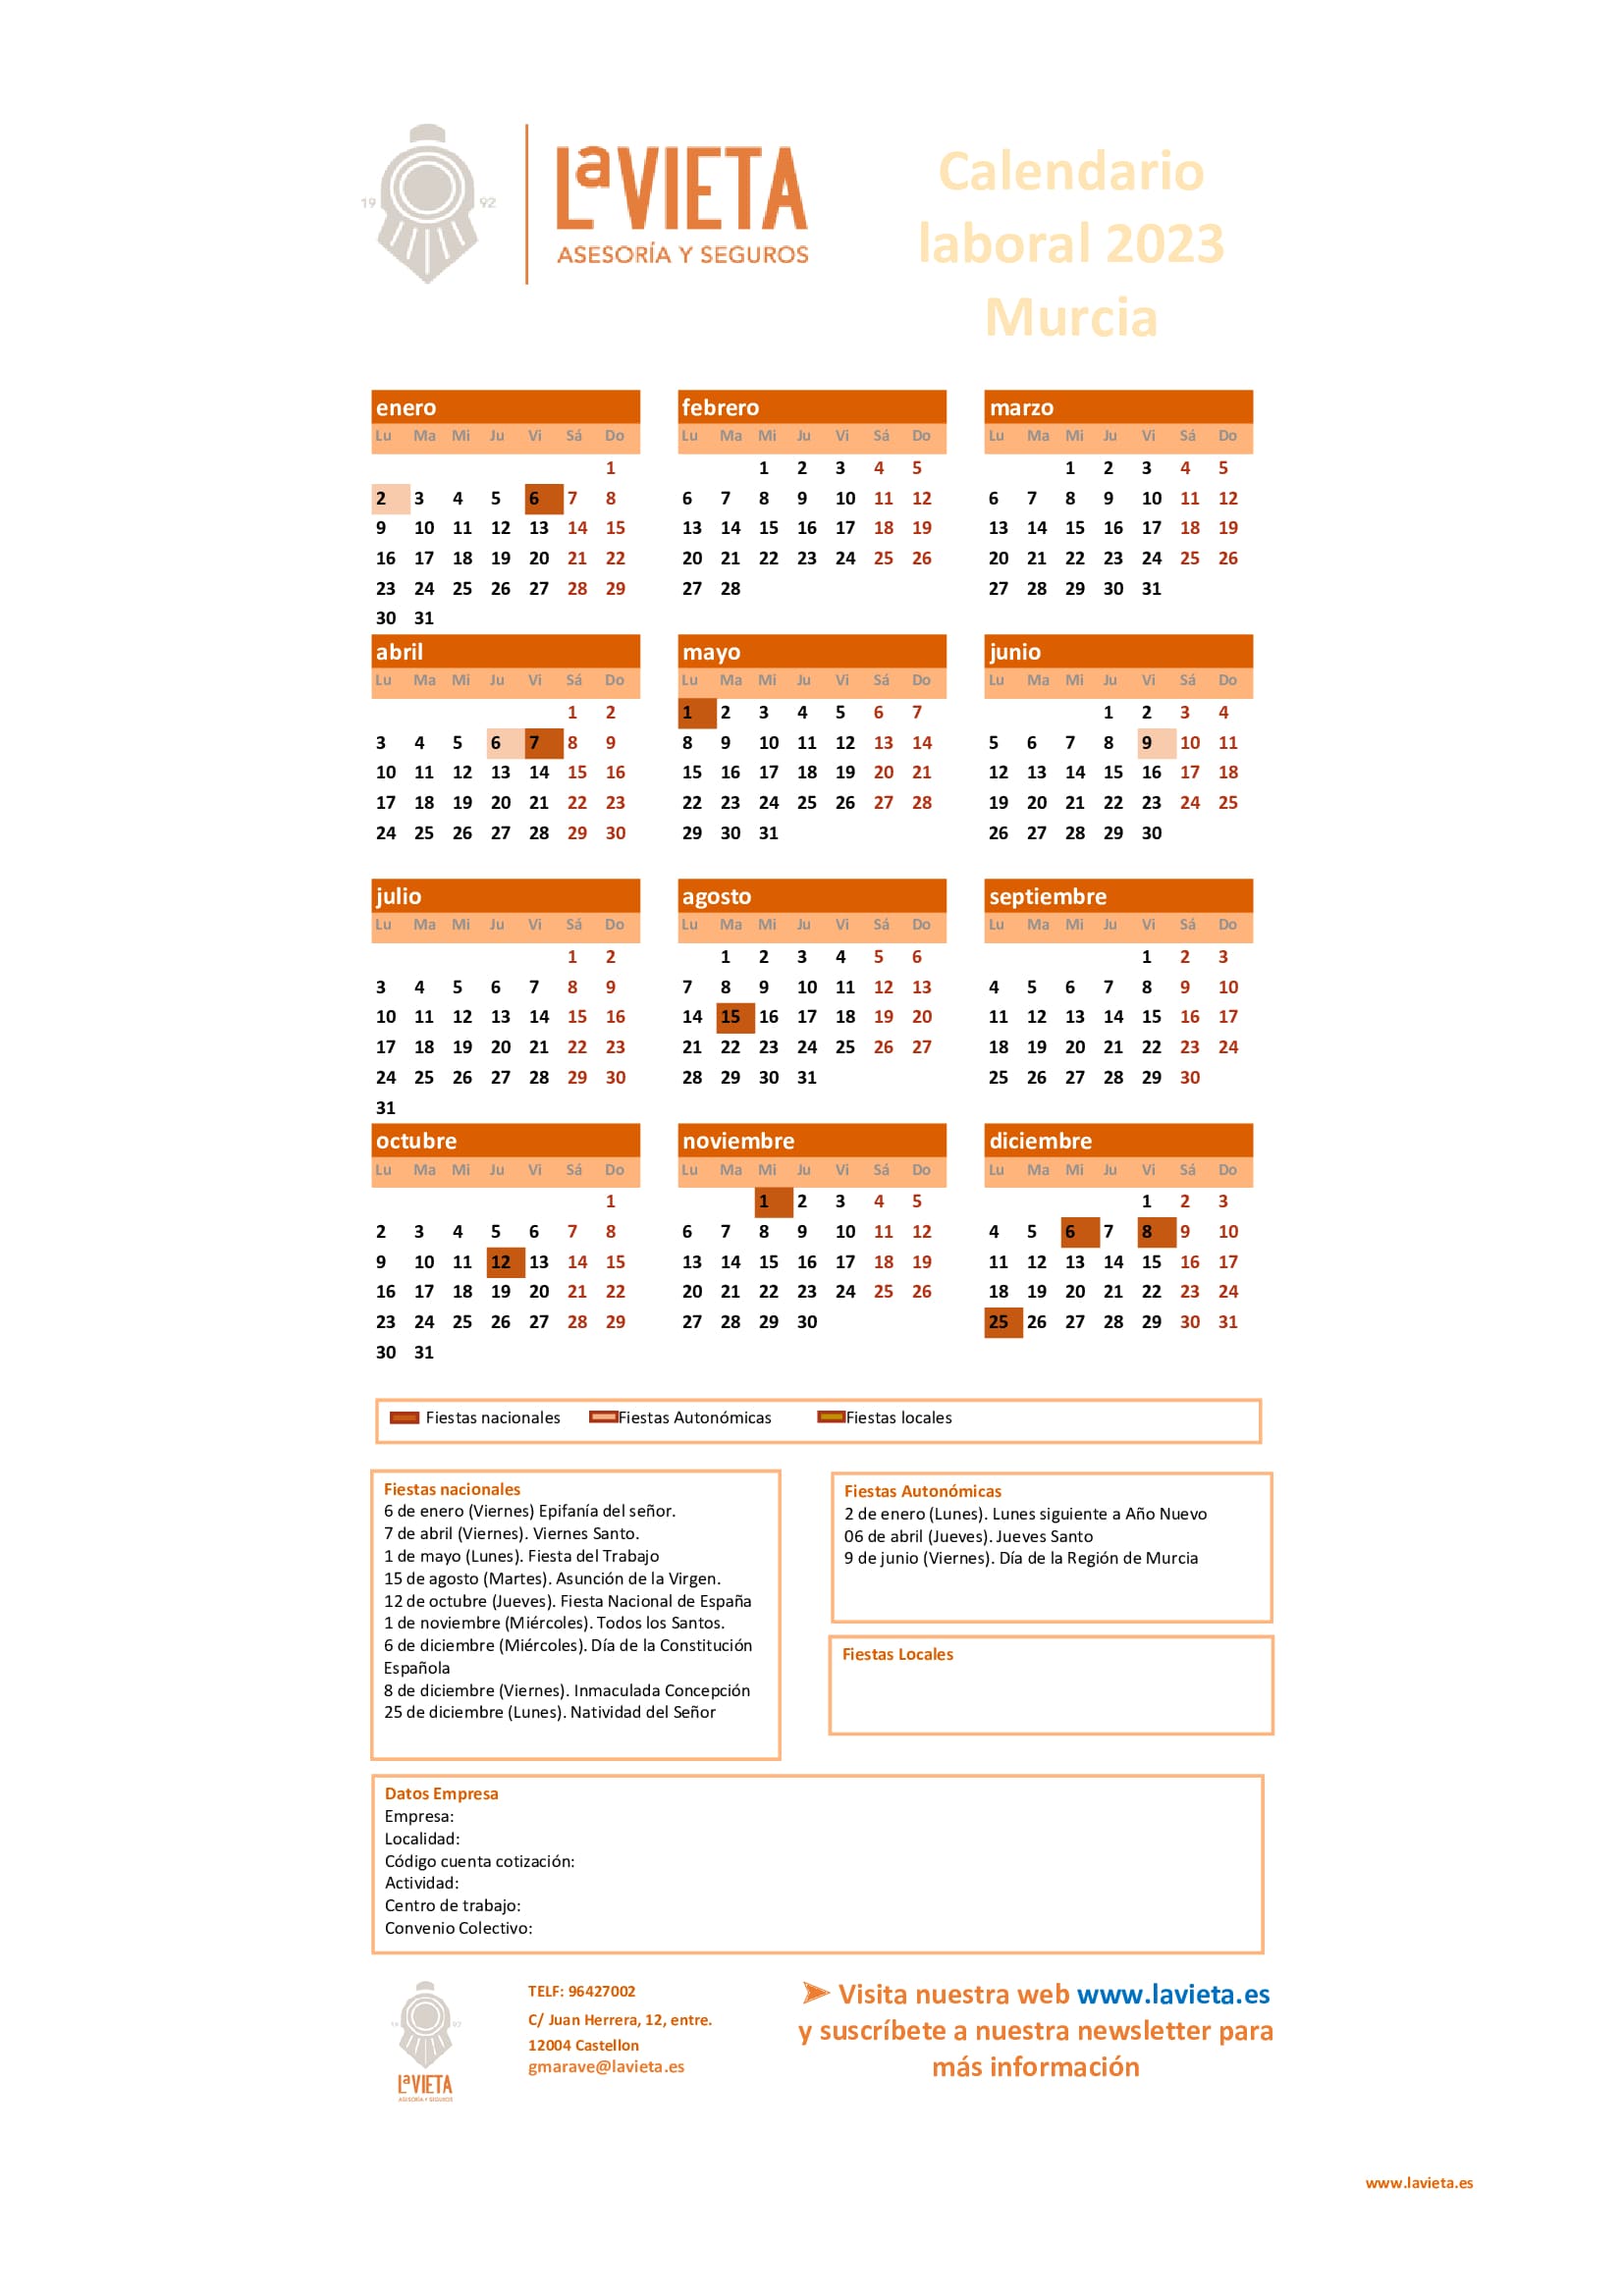 Festivos De Murcia 2023 Calendario laboral de Murcia 2023 en PDF para imprimir